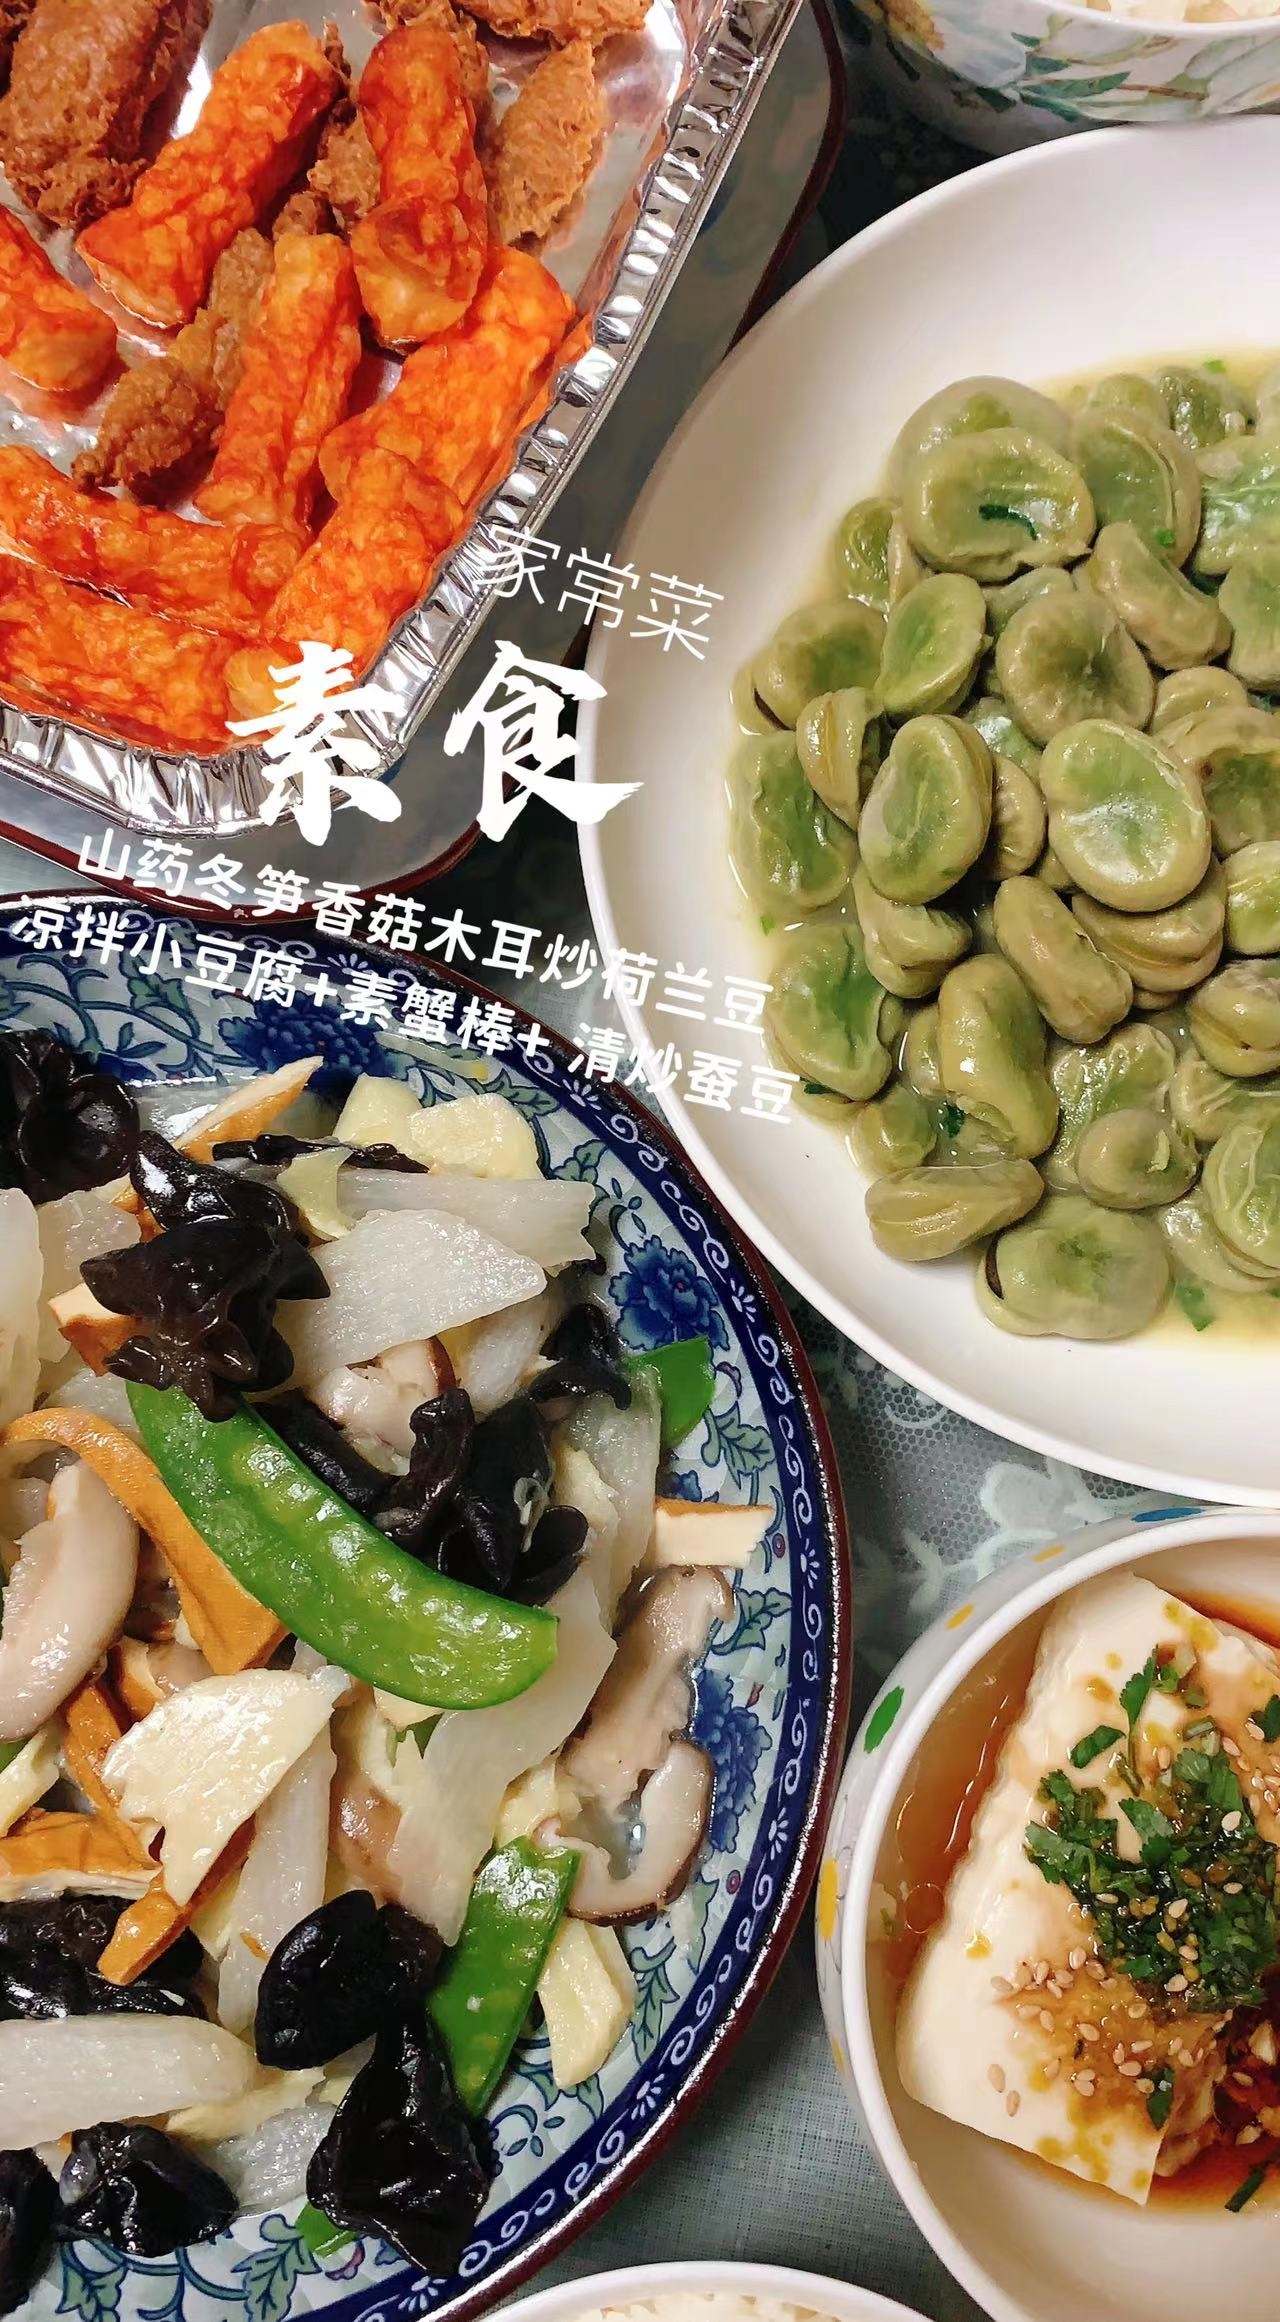 🉑素食家常菜:山药冬笋香菇木耳炒荷兰豆、凉拌小豆腐、素蟹棒、清炒蚕豆